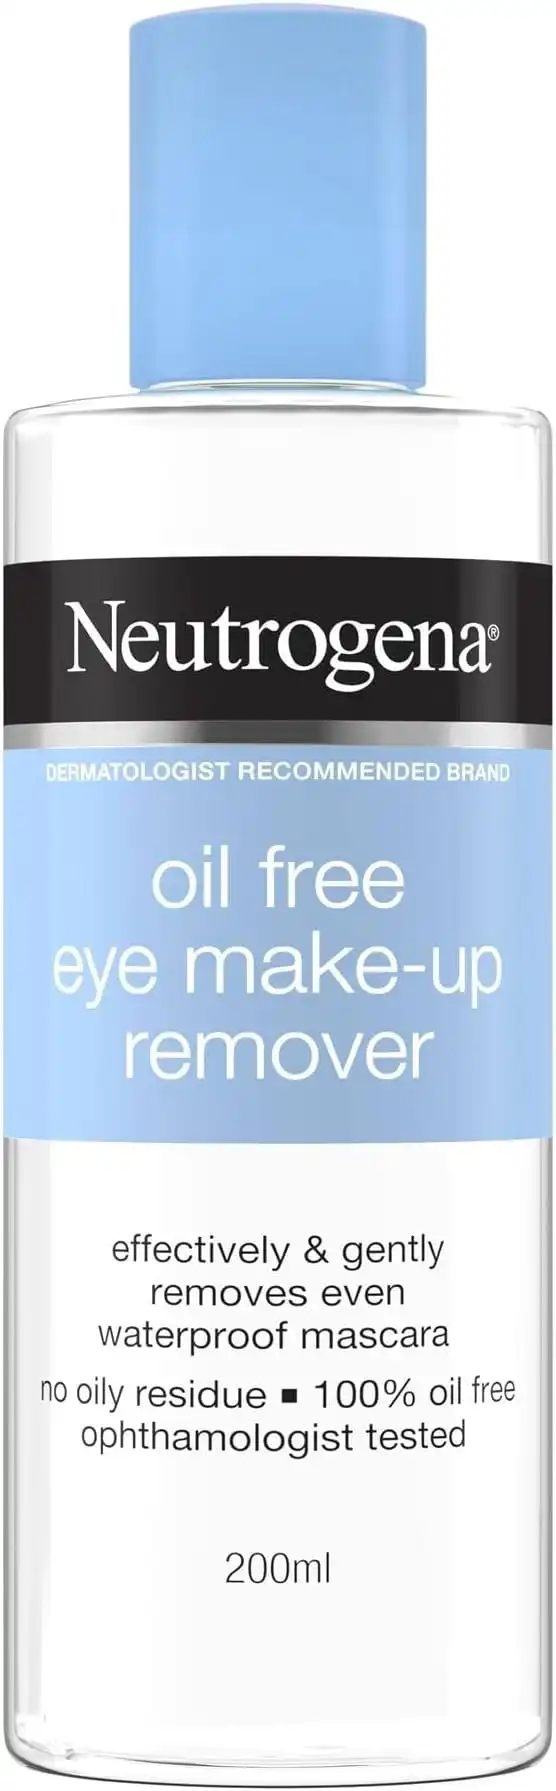 Neutrogena Oil-Free Eye Make-Up Remover 200mL